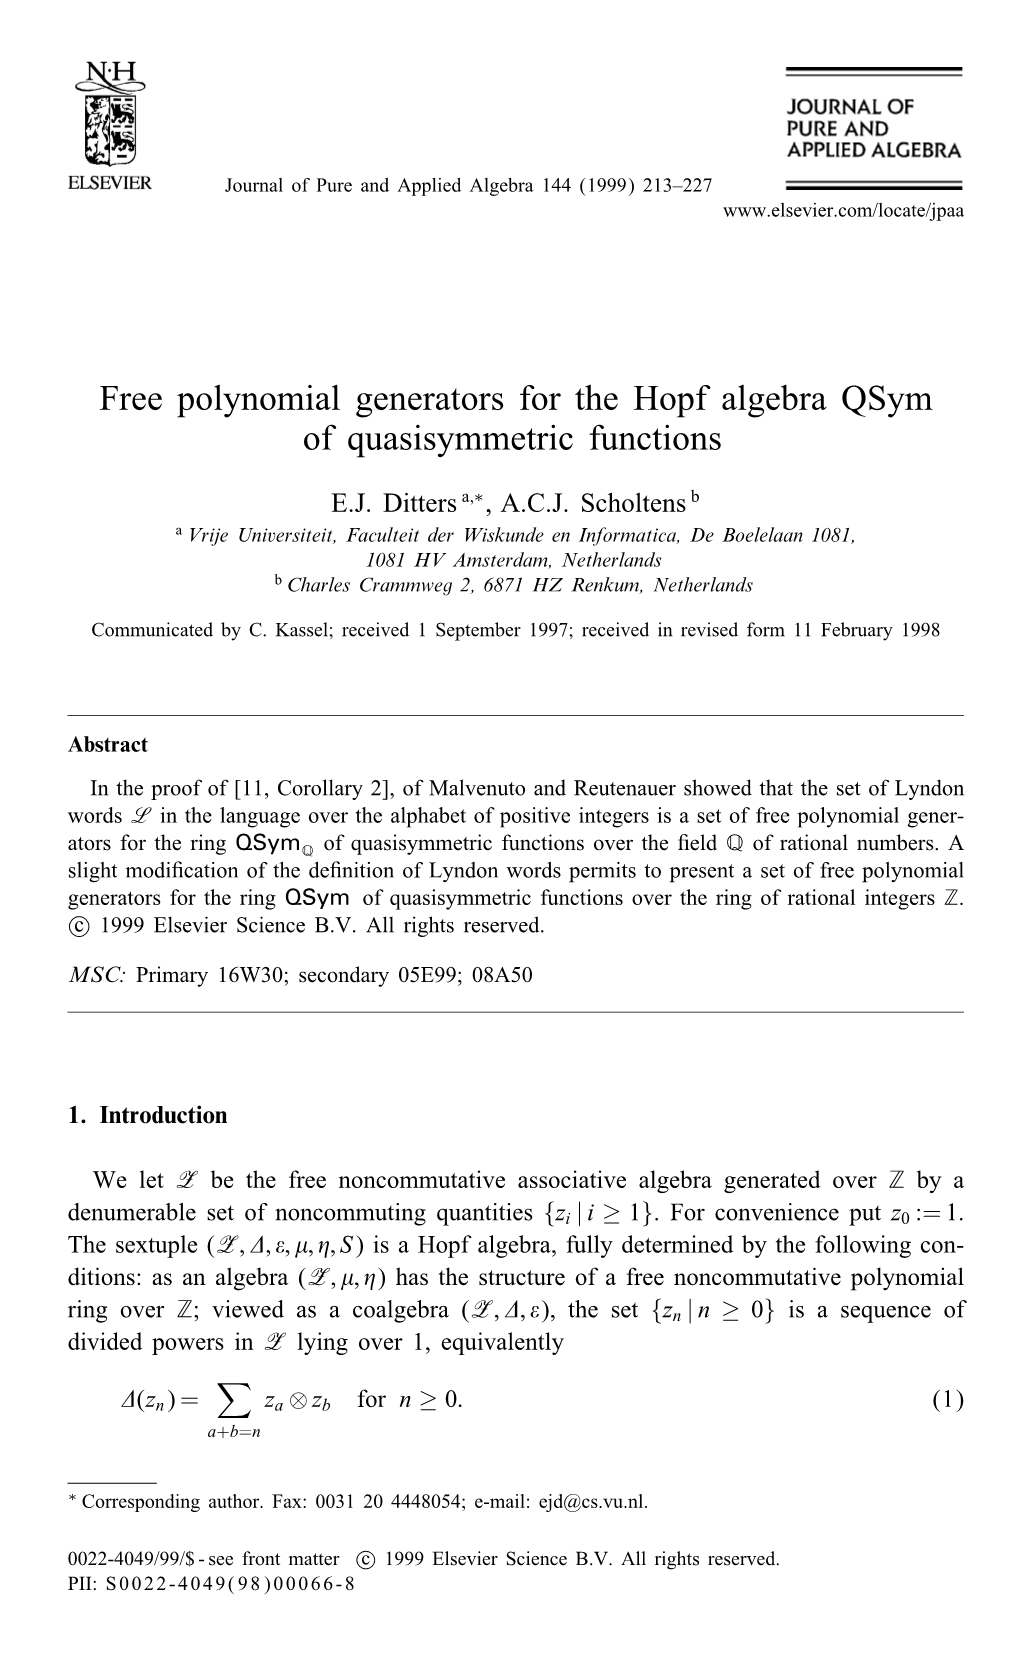 Free Polynomial Generators for the Hopf Algebra Qsym of Quasisymmetric Functions